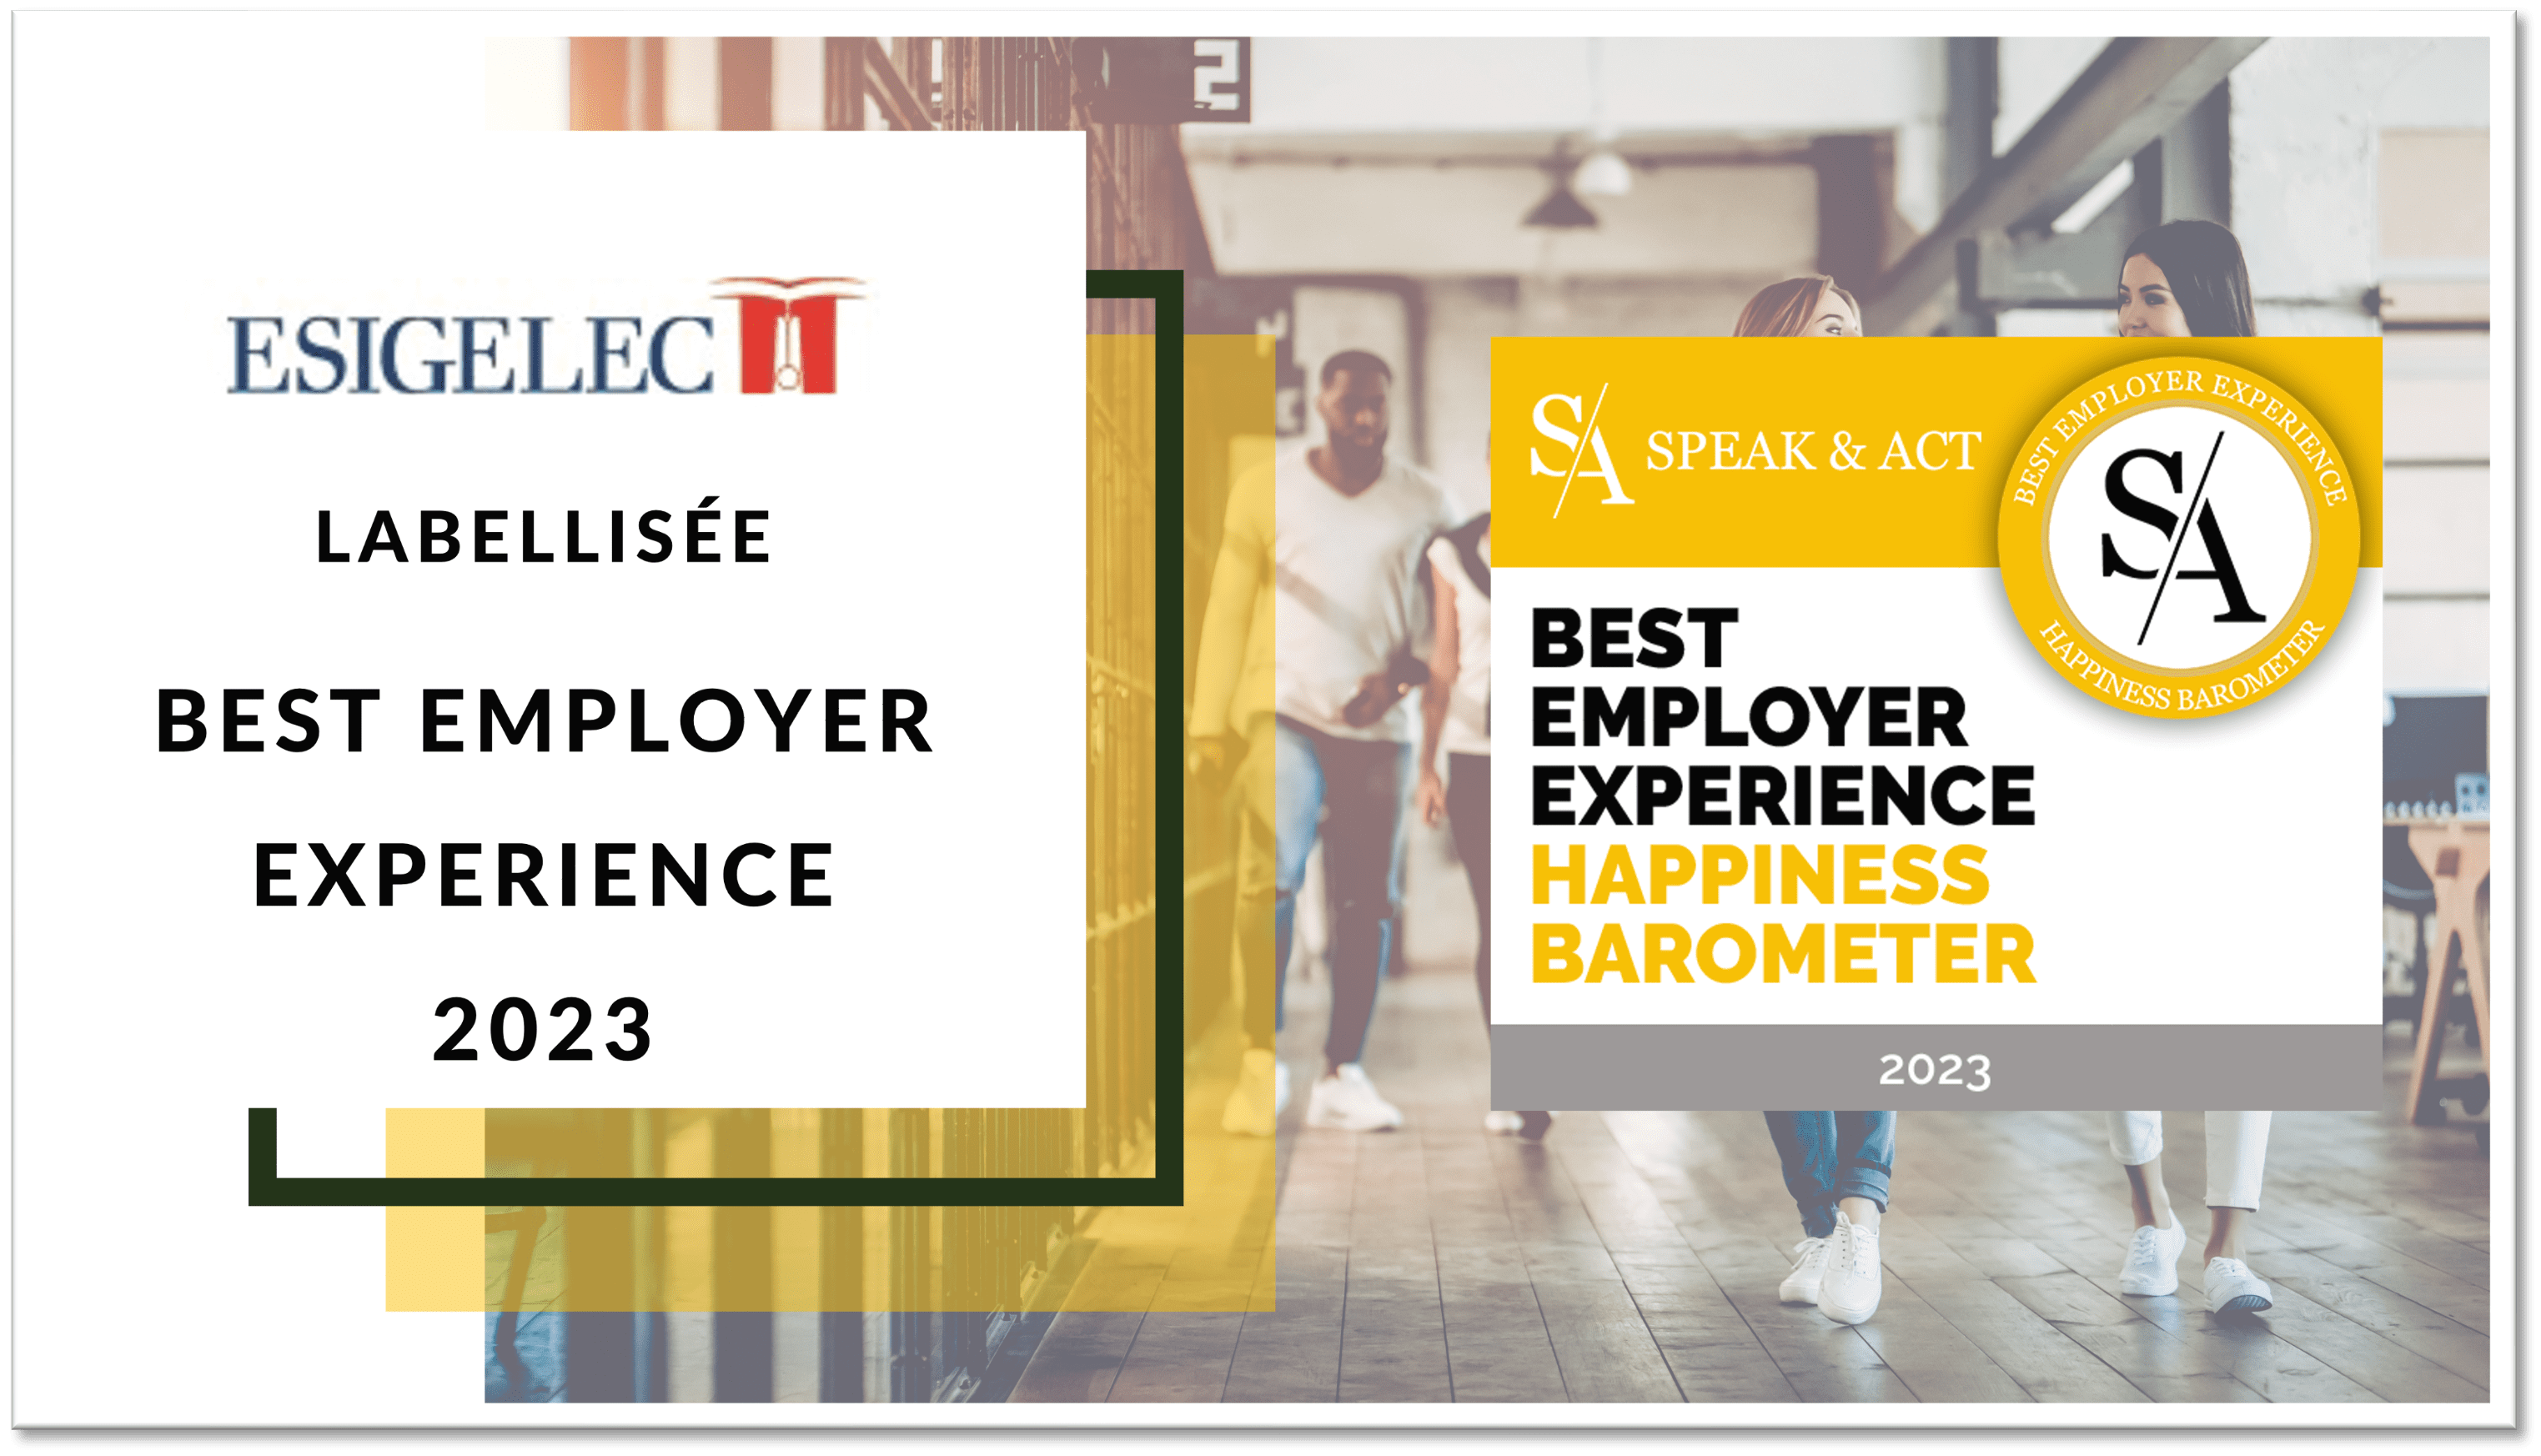 ESIGELEC, labellisée Best Employer Experience 2023 par Speak & Act